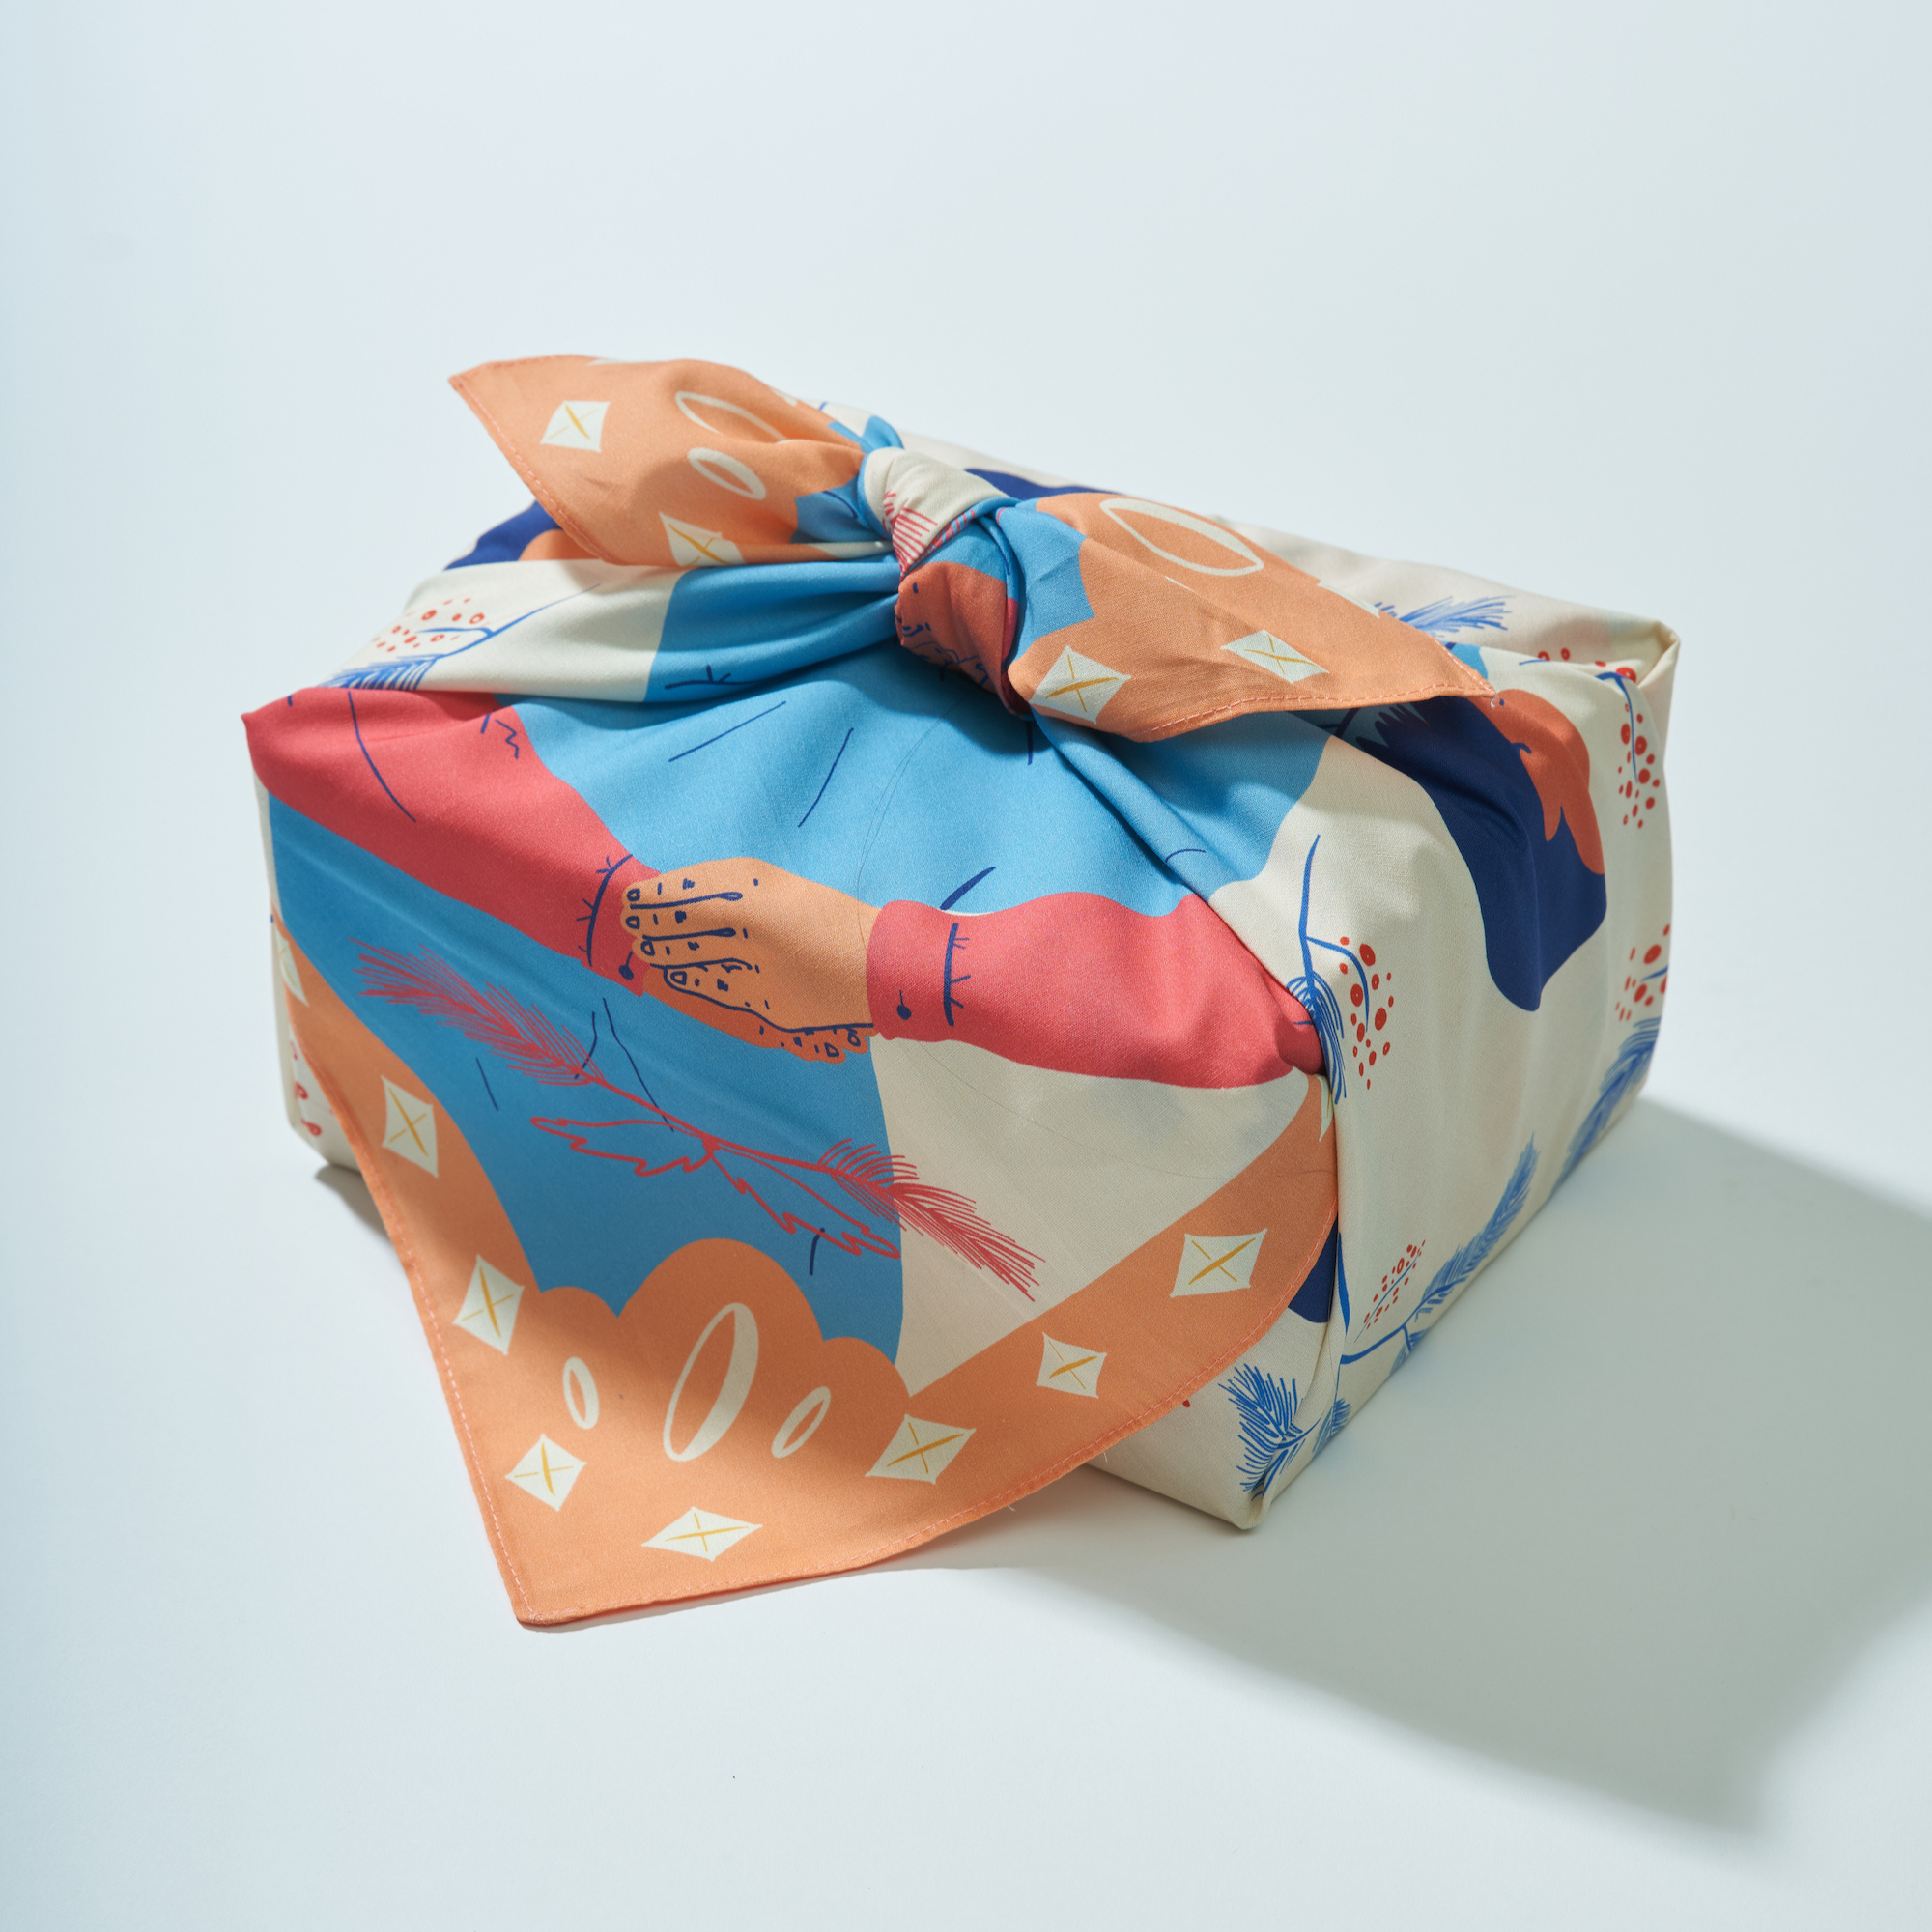 Joy | 28" Furoshiki Wrap: Medium / Cotton